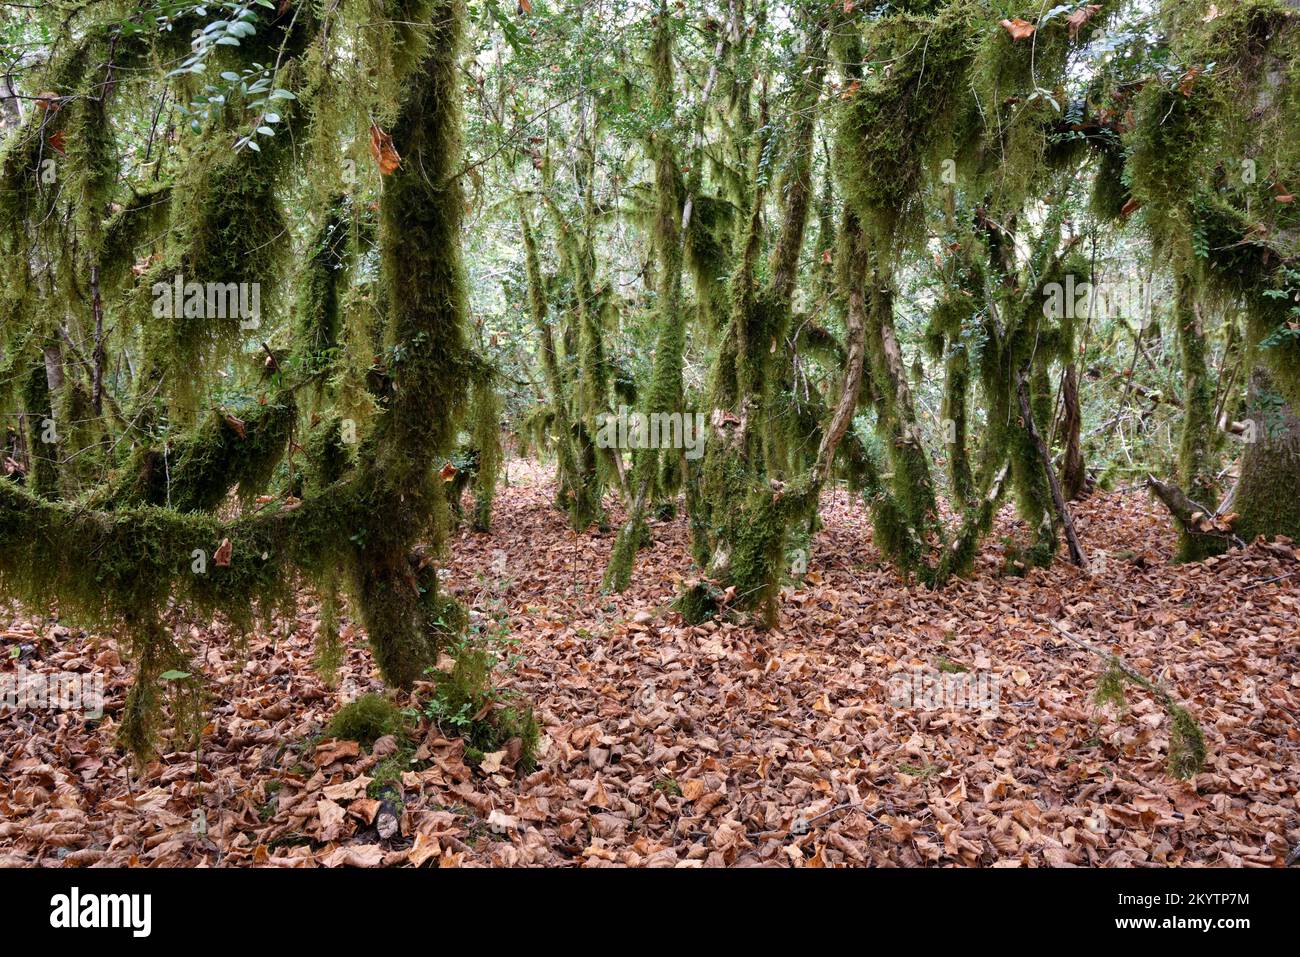 Lichen à barbe verte, Usnea sp, affectant les arbres à boîte commune ou la forêt de buis, Buxus sempervirens Banque D'Images